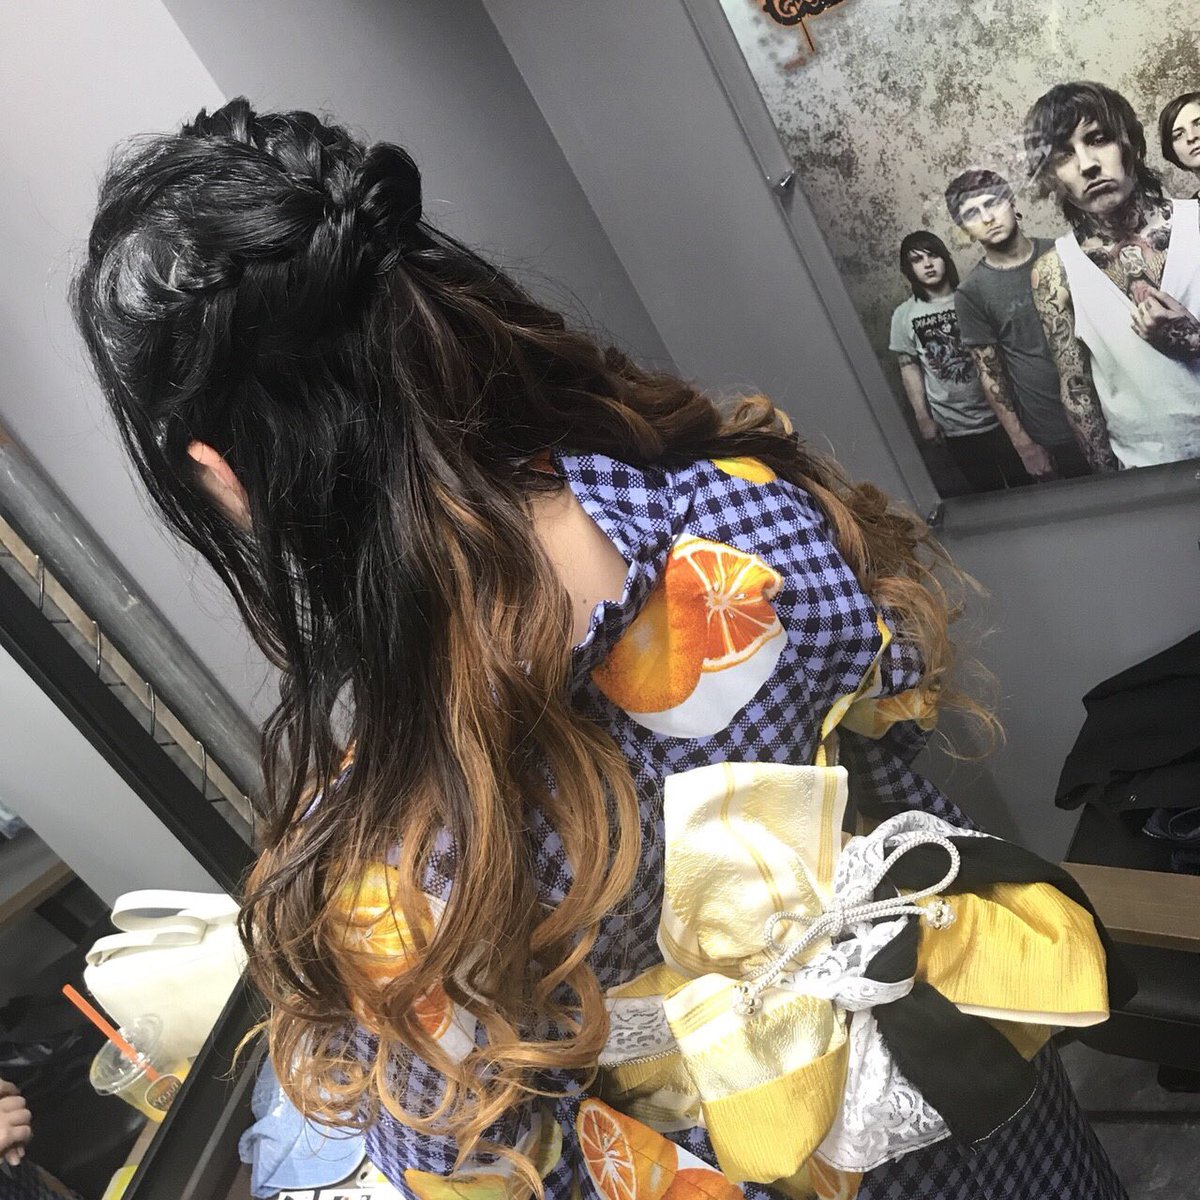 Rock Hair Factory ロクヘア 渋谷 美容室 على تويتر ロカホリ下北沢のカナさん Kanary Yellooow が着付けとヘアセットで来てくれました 本日ロカホリ下北沢では浴衣イベント 朝まで盛り上がりましょう カナさんありがとうございました٩ ˊᗜˋ و